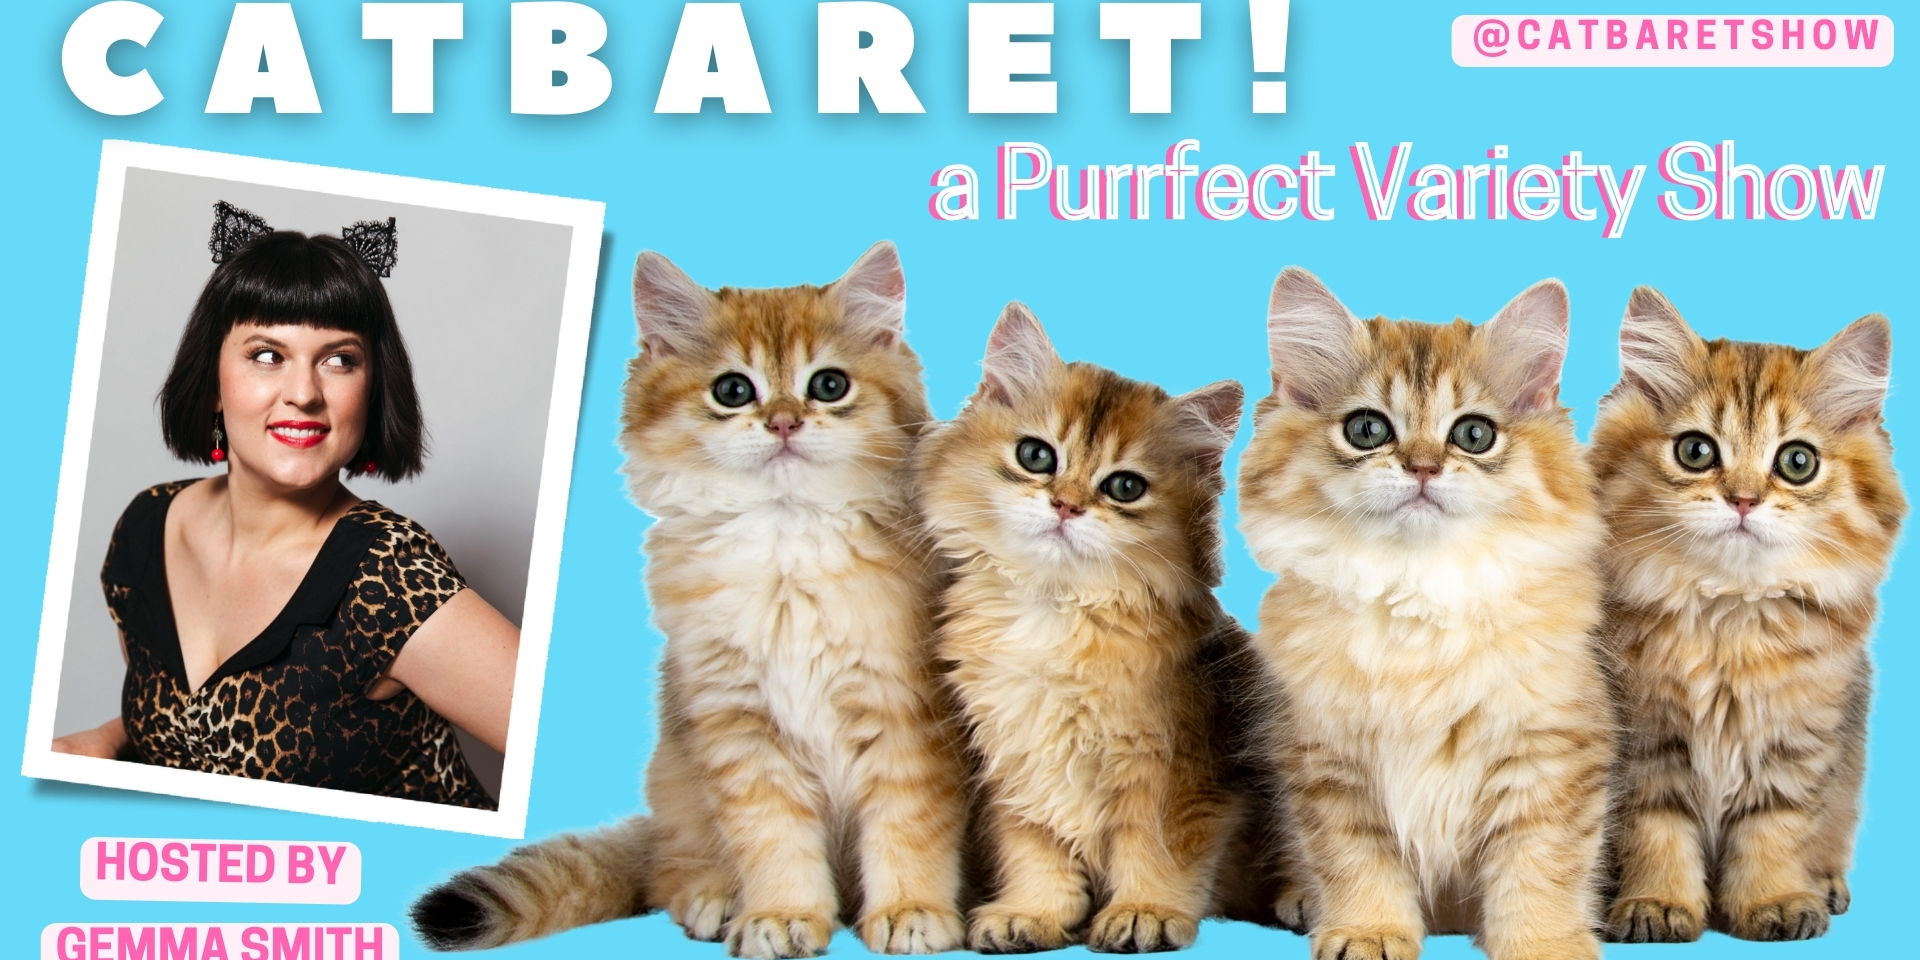 CATBARET! promotional image